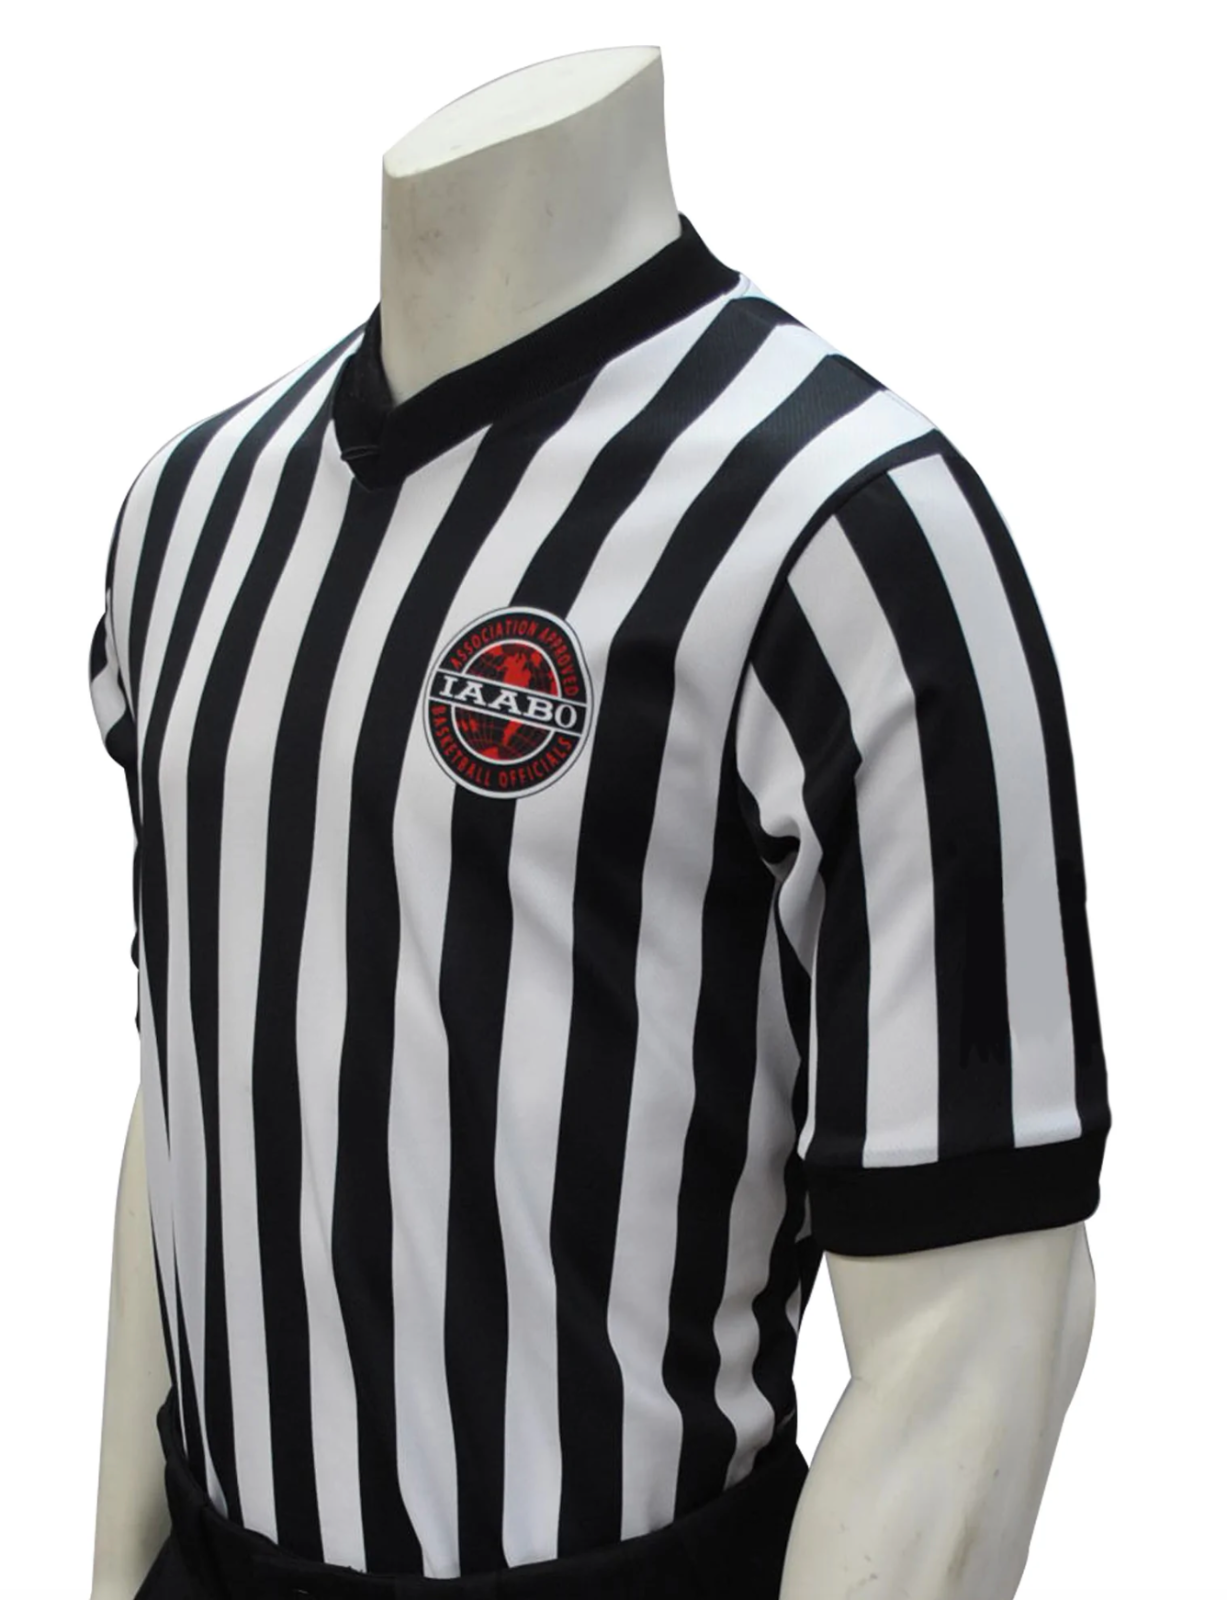 Смитти | I200 | Официальная мужская баскетбольная рубашка судьи IAABO | Черный Белый 1 